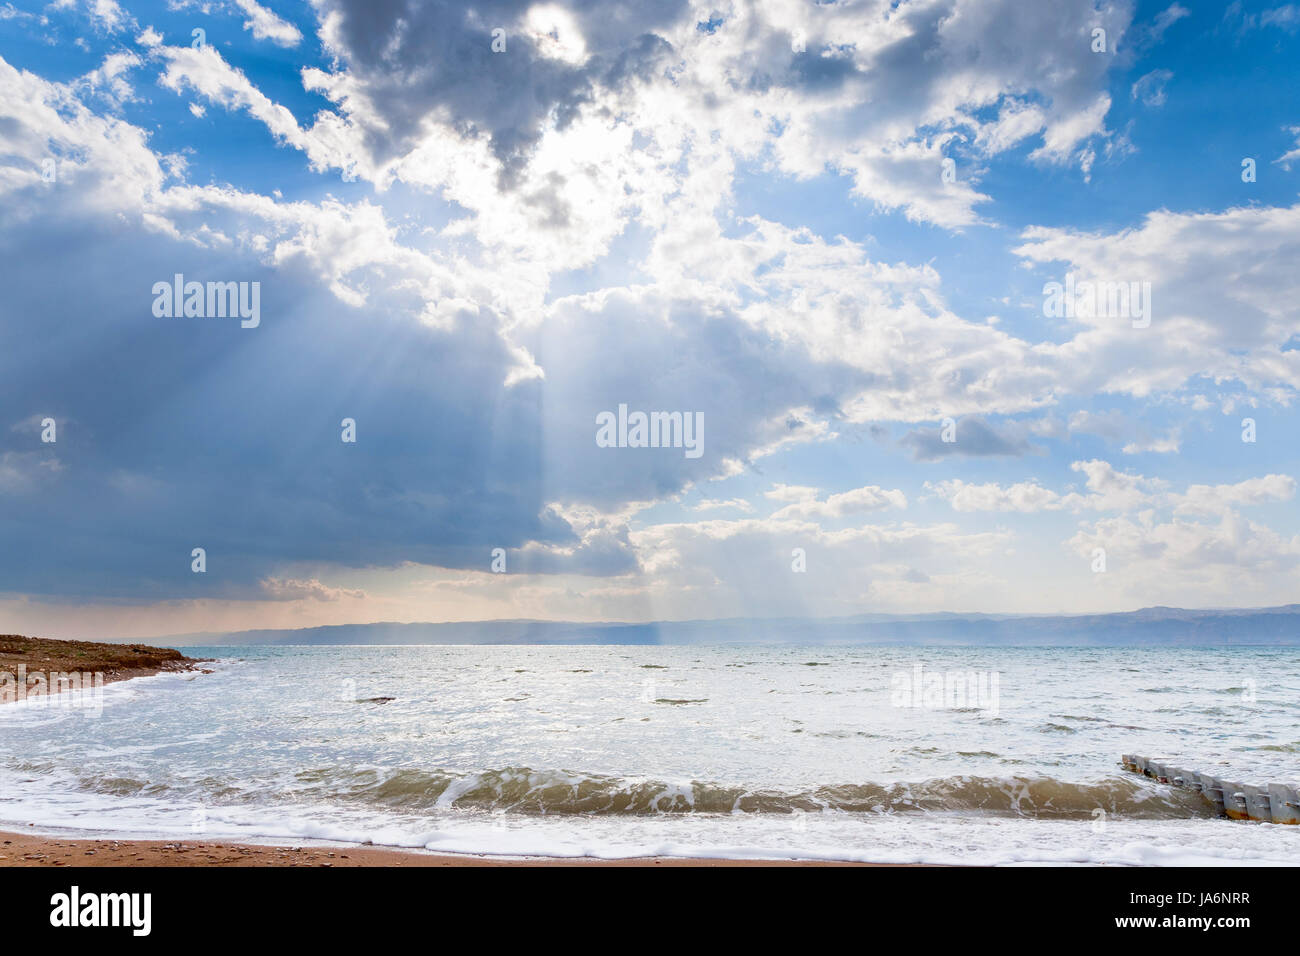 horizon, sunset, beam, cloud, beach, seaside, the beach, seashore, black, Stock Photo